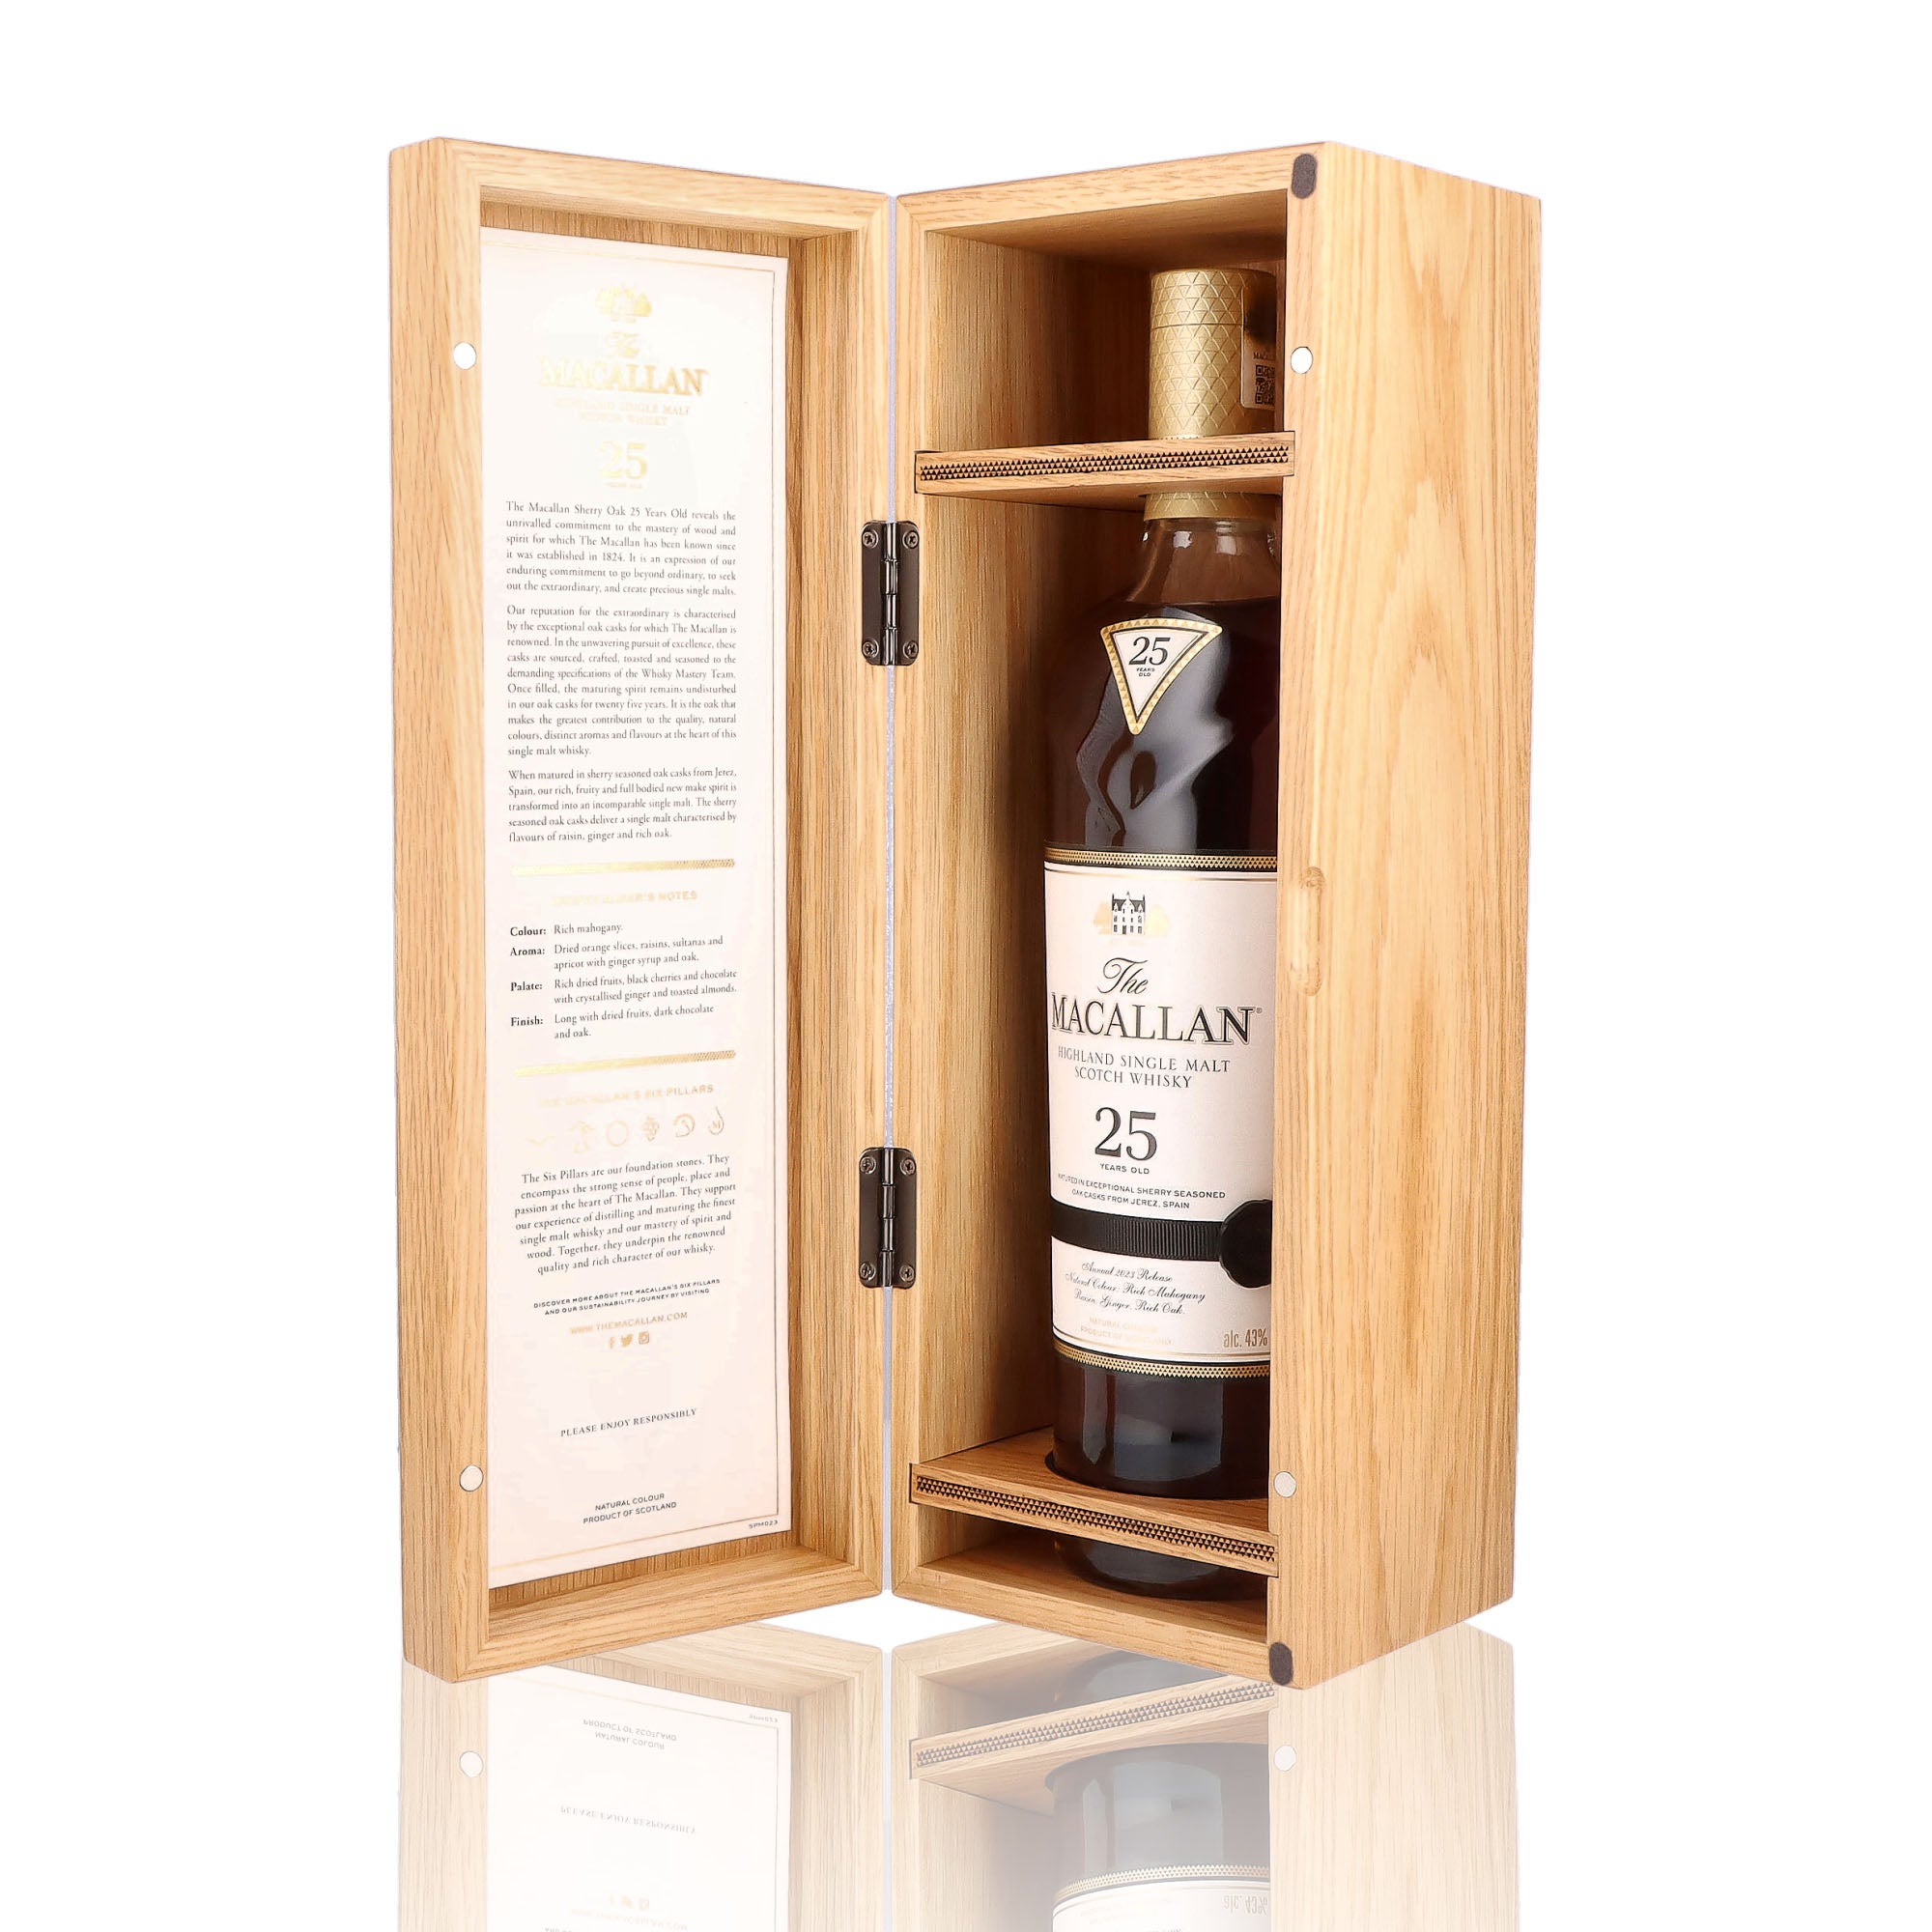 Une bouteille de Scotch Whisky Single Malt de la marque Macallan, nommée Sherry Oak, 25 ans d'âge